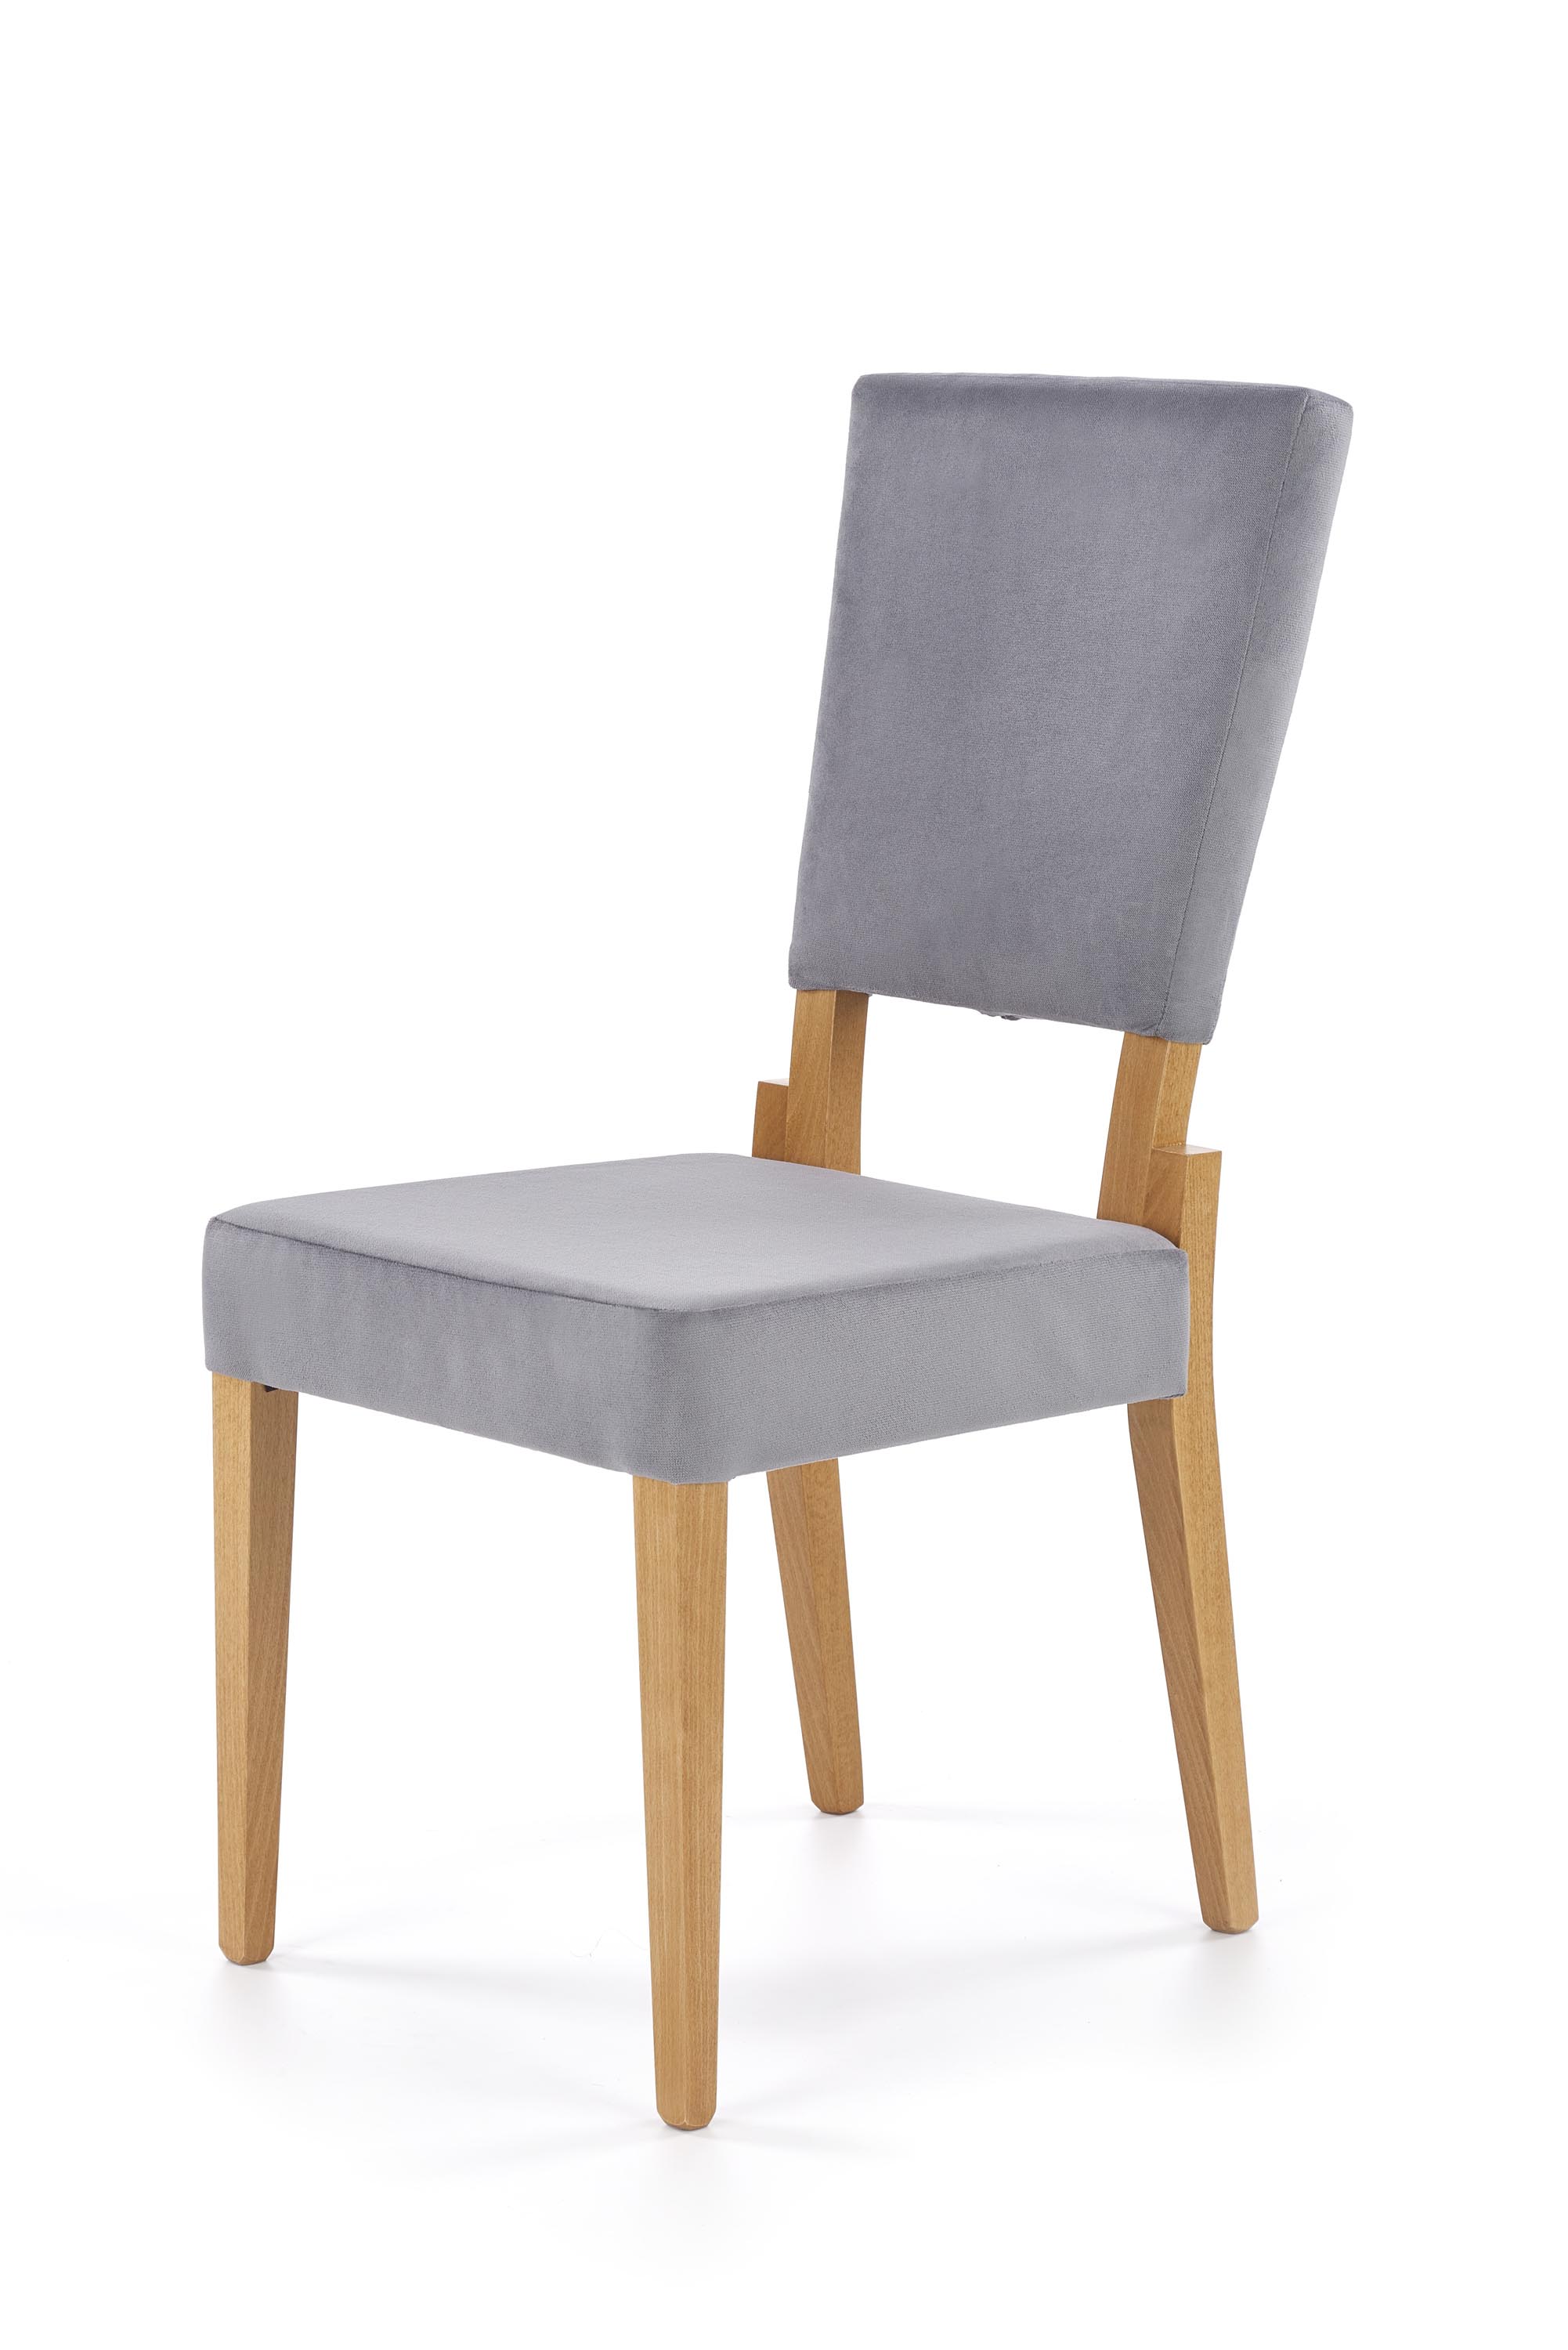 SORBUS krzesło, tapicerka - popielaty, nogi - dąb miodowy sorbus krzesło, tapicerka - popielaty, nogi - dąb miodowy